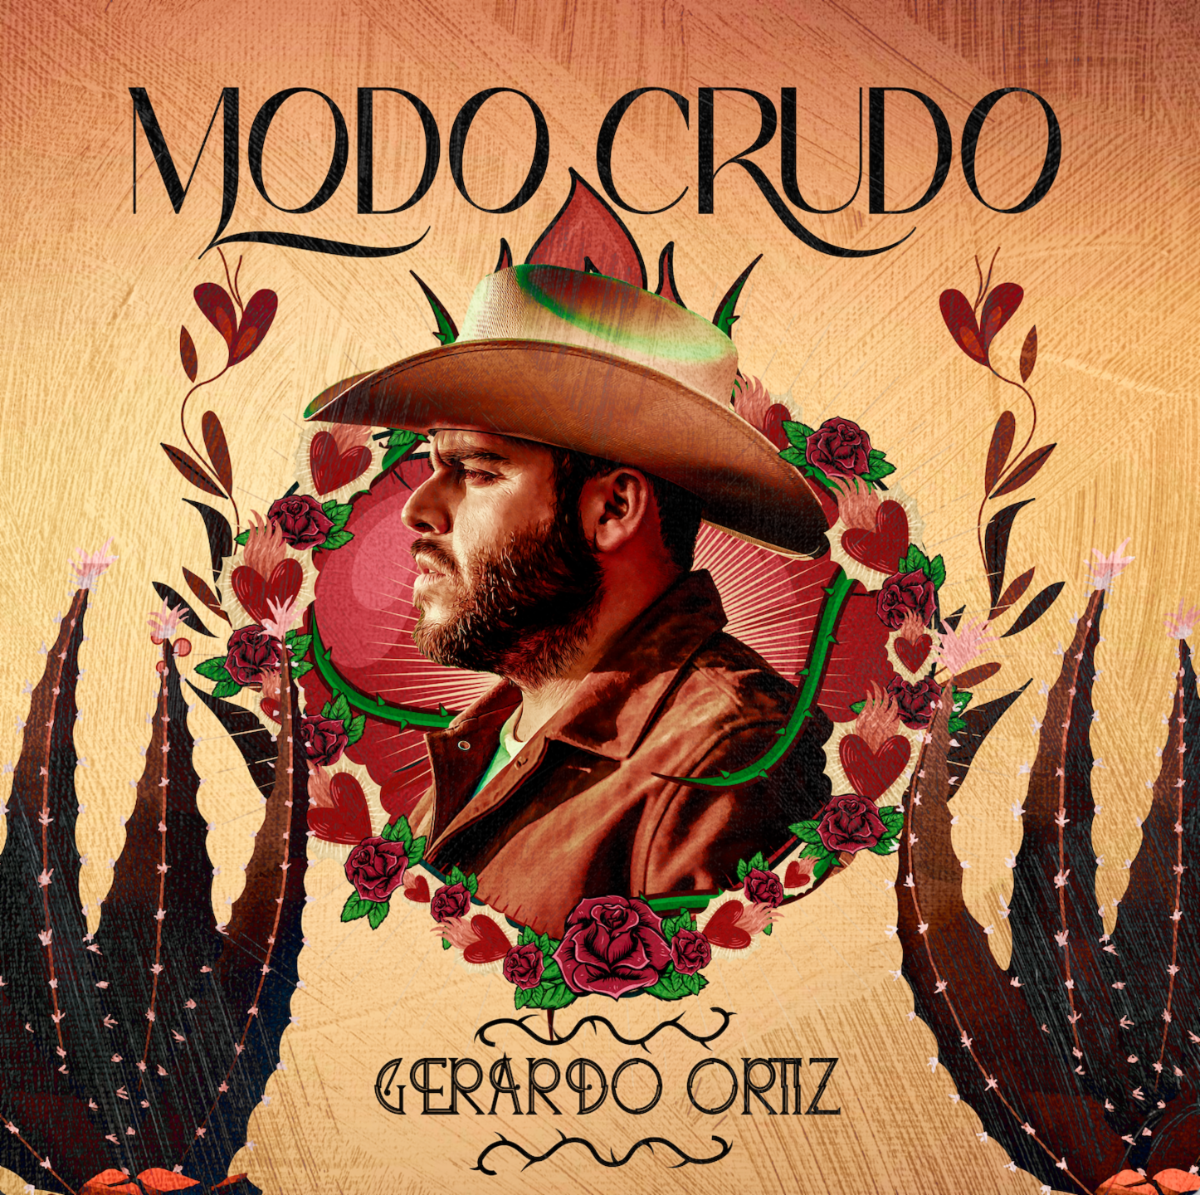 GERARDO CRUDO lanza nuevo tema “Modo Crudo”